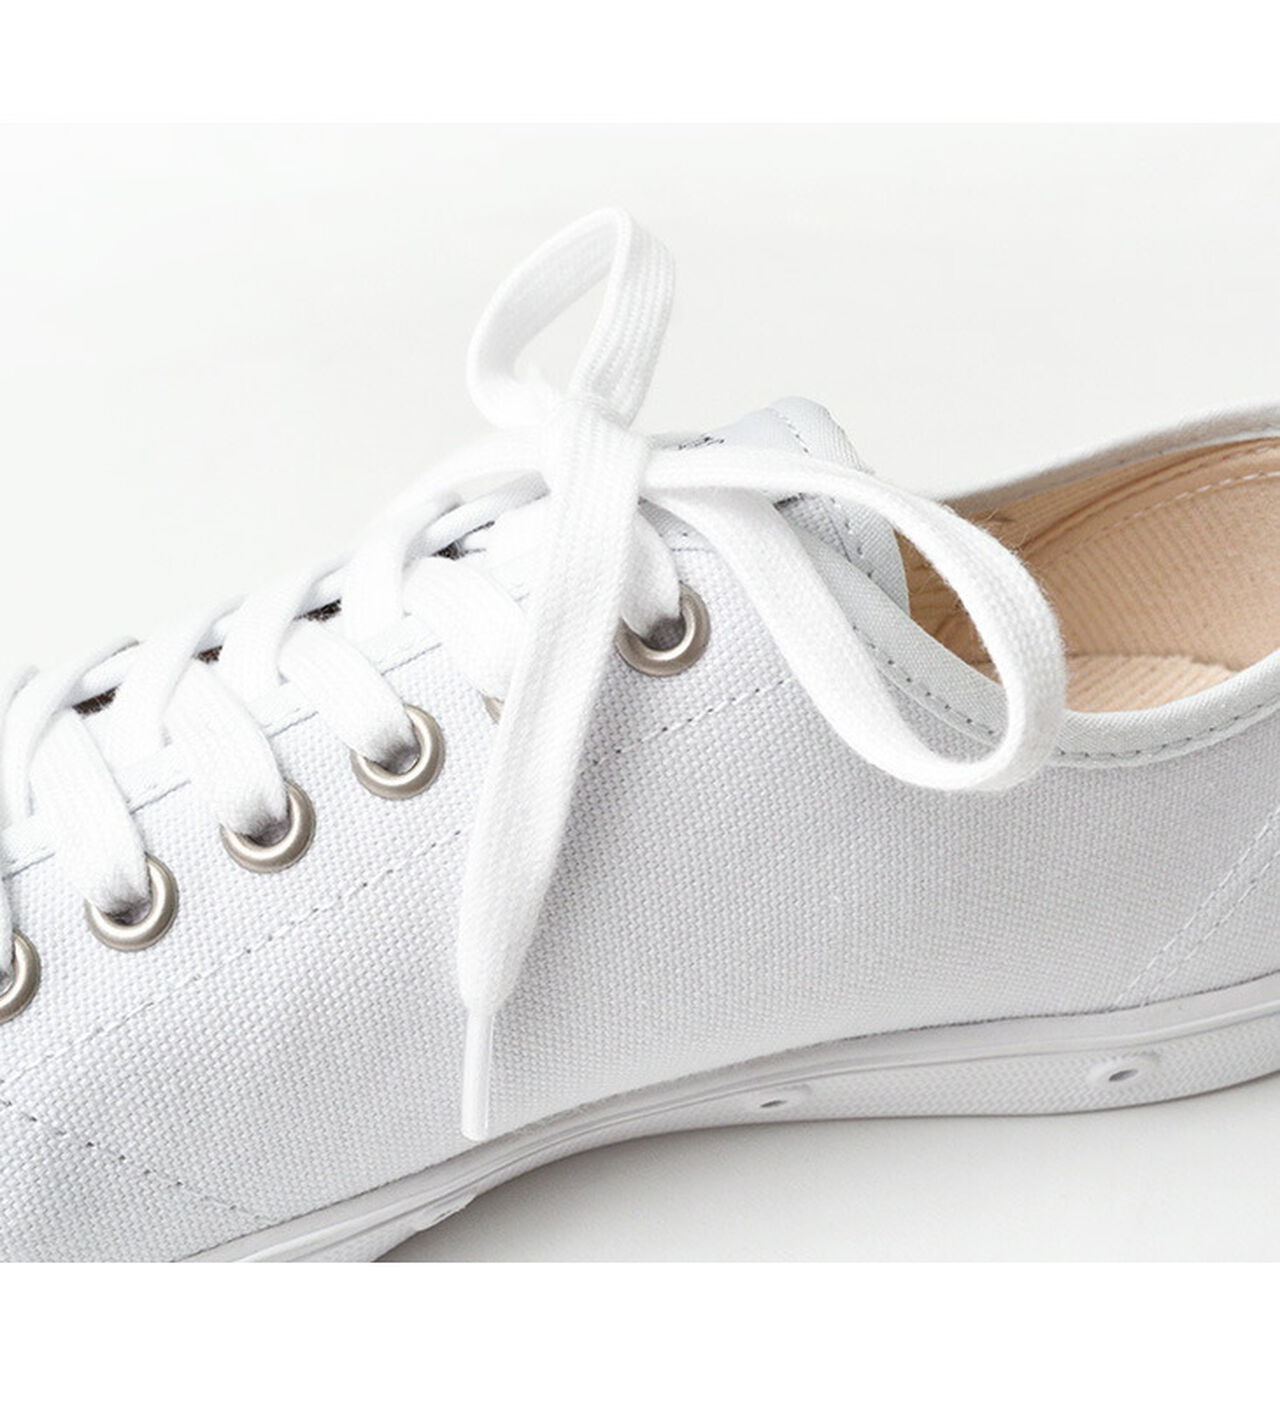 Athletic Cotton Shoe Lace Regular